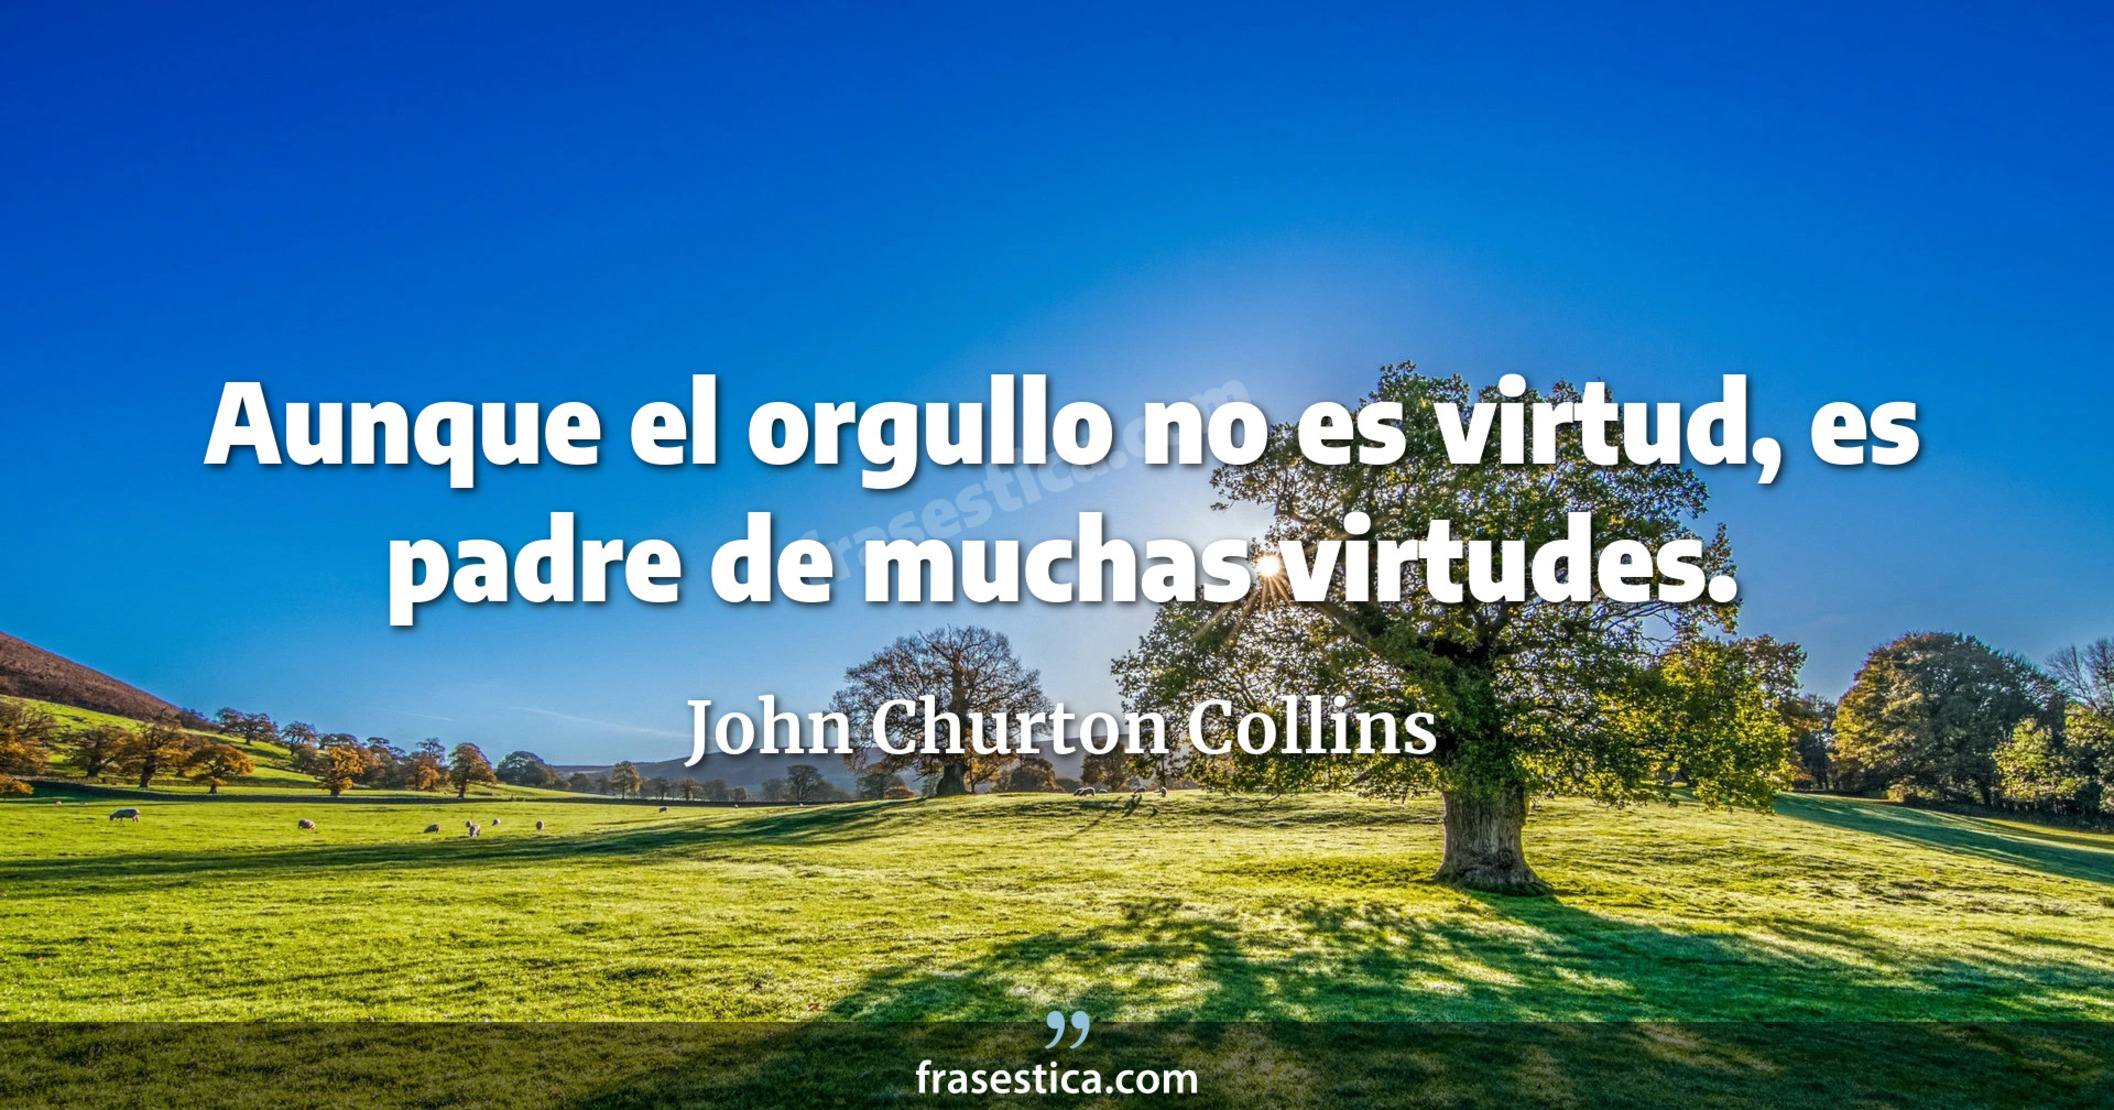 Aunque el orgullo no es virtud, es padre de muchas virtudes. - John Churton Collins